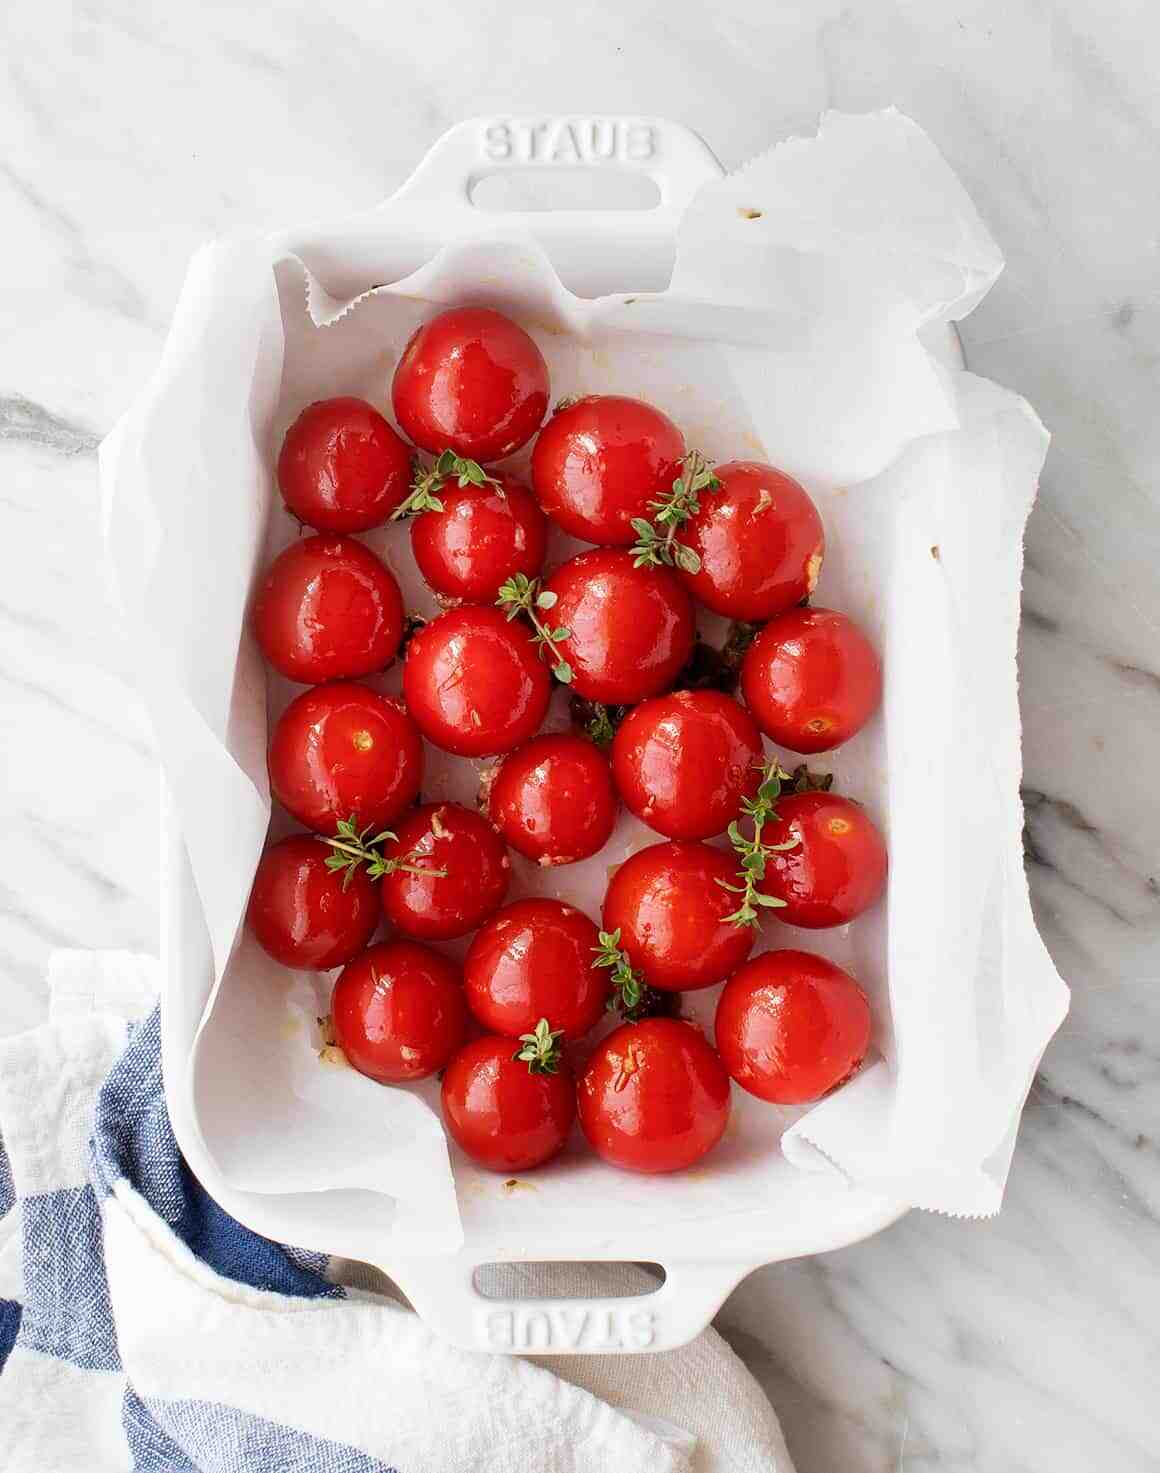 Quand Faut-il donner de l'engrais aux tomates ?